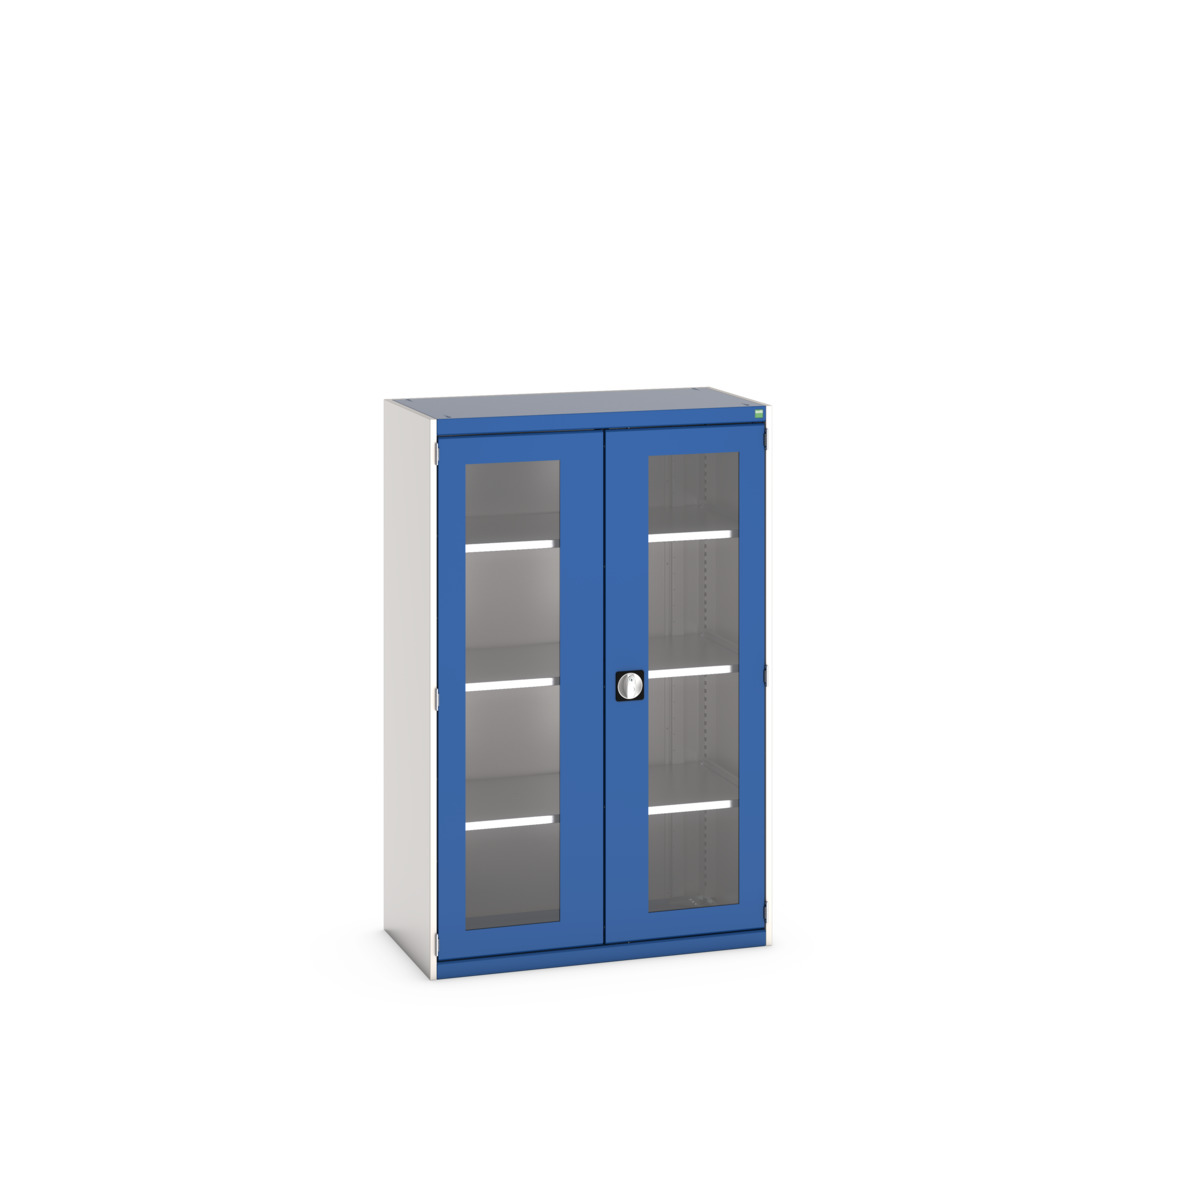 40013062.11V - cubio cupboard